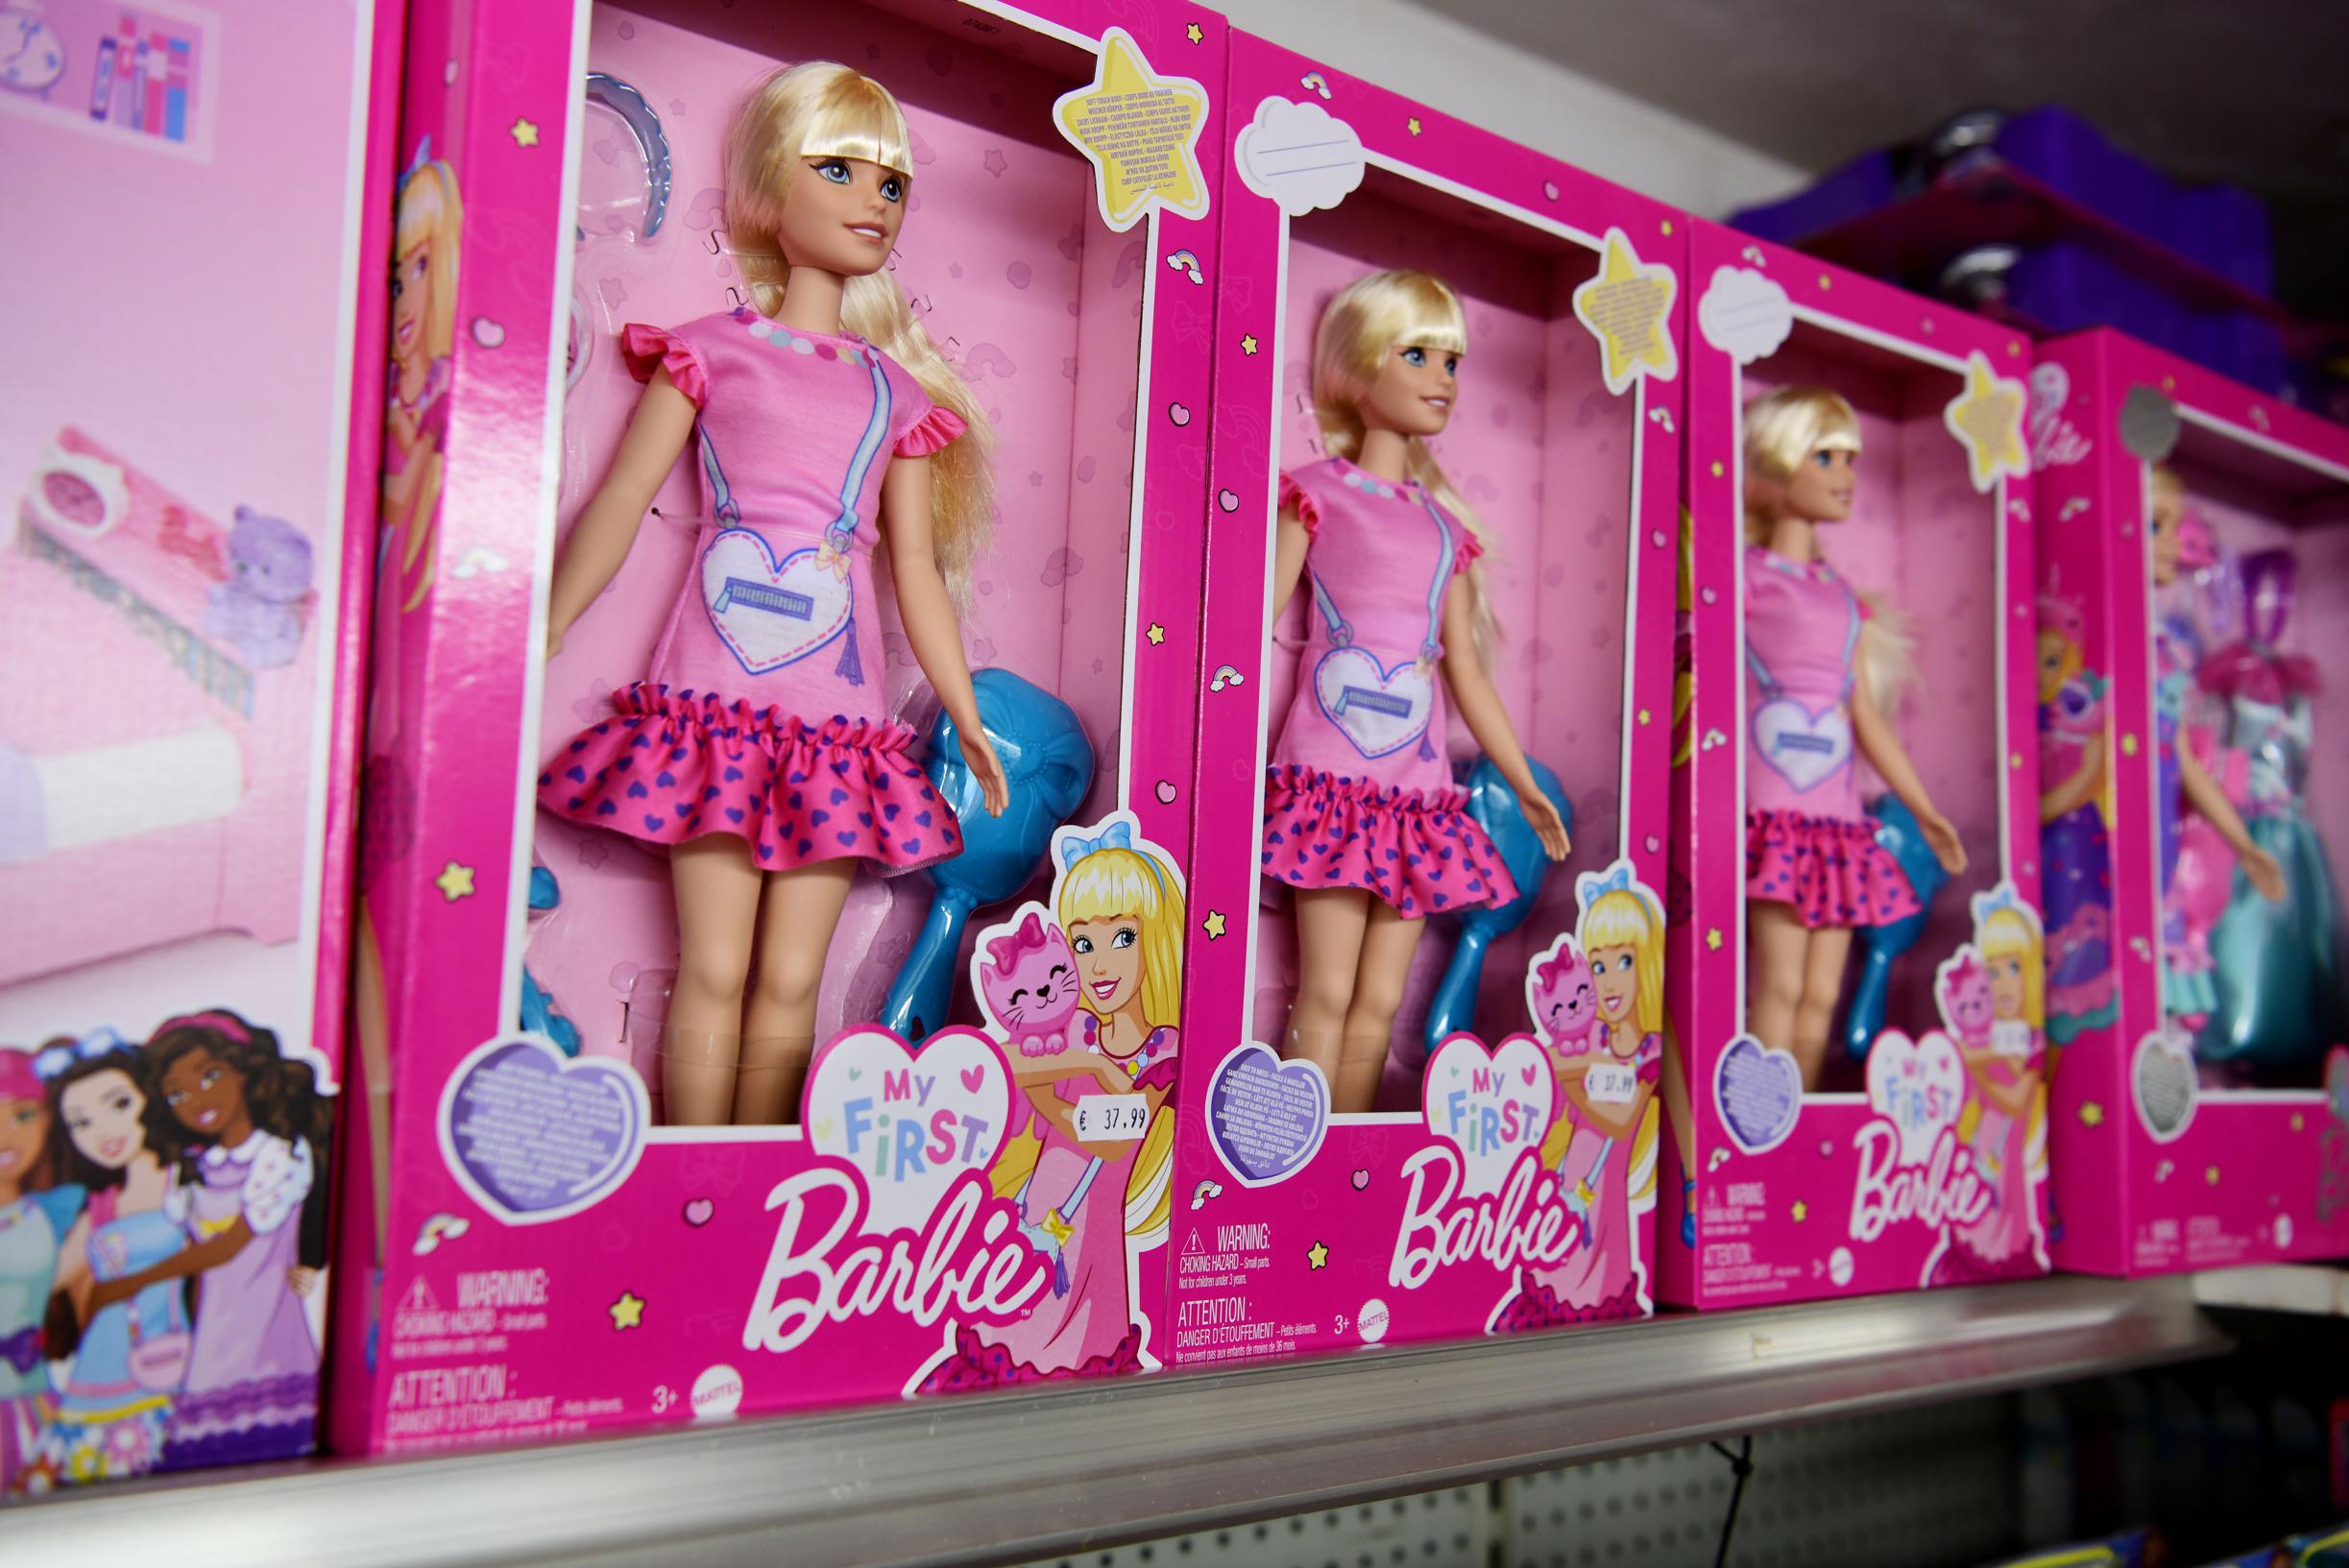 Wrijven Hobart motief Succesfilm Barbie doet ook verkoop van Barbie-producten pieken: “50% meer  dan normaal” | Gazet van Antwerpen Mobile